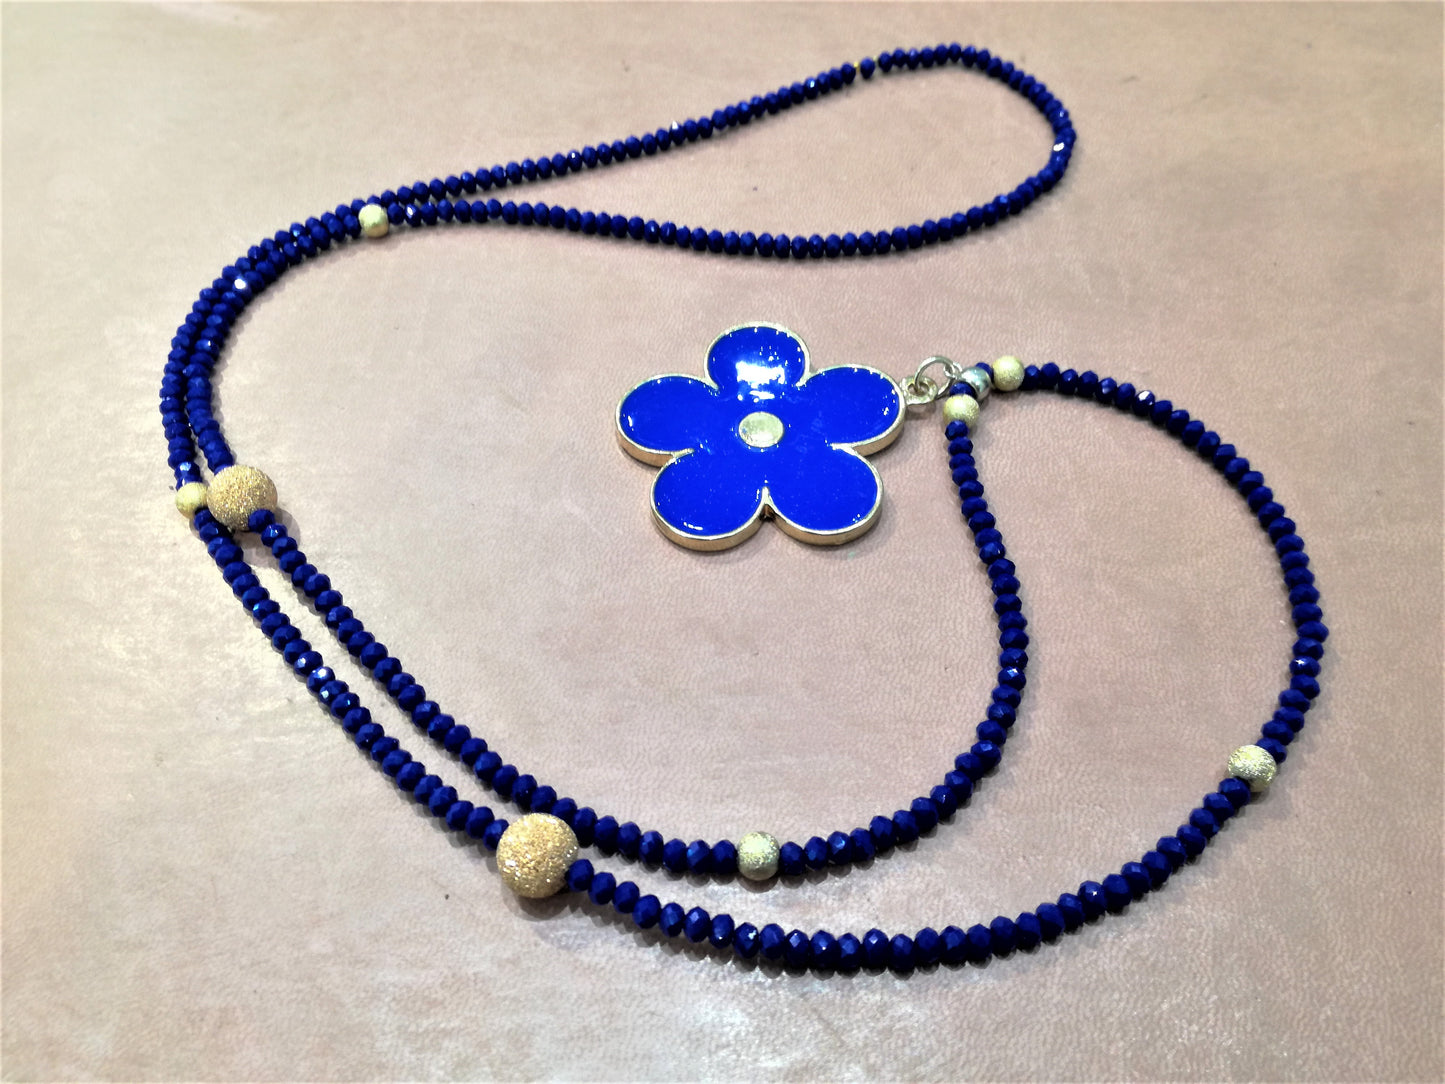 Collana SOPHIA i colori .016 piccoli cristalli blu con perline dorate e ciondolo grande fiore metallo blu.